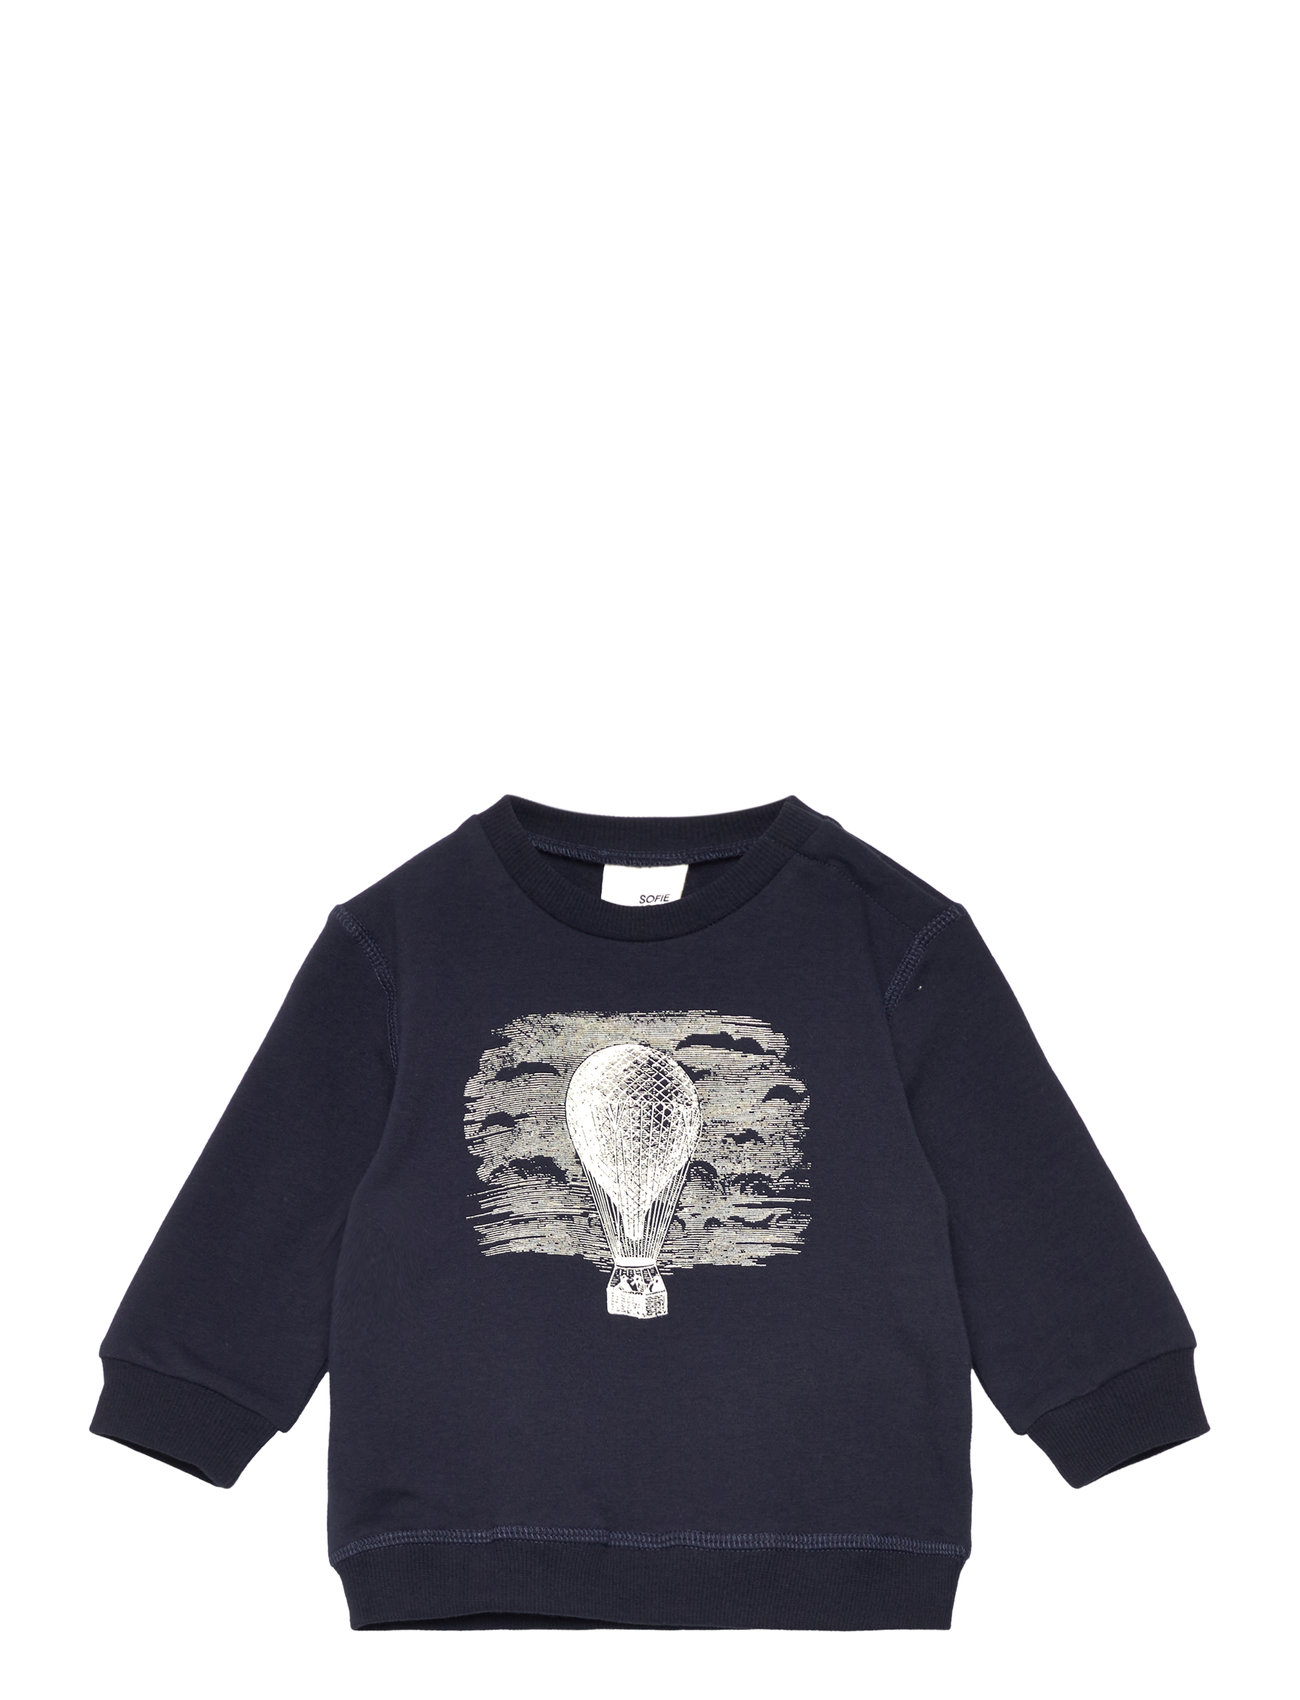 Sweatshirt Tops Sweat-shirts & Hoodies Sweat-shirts Navy Sofie Schnoor Baby And Kids